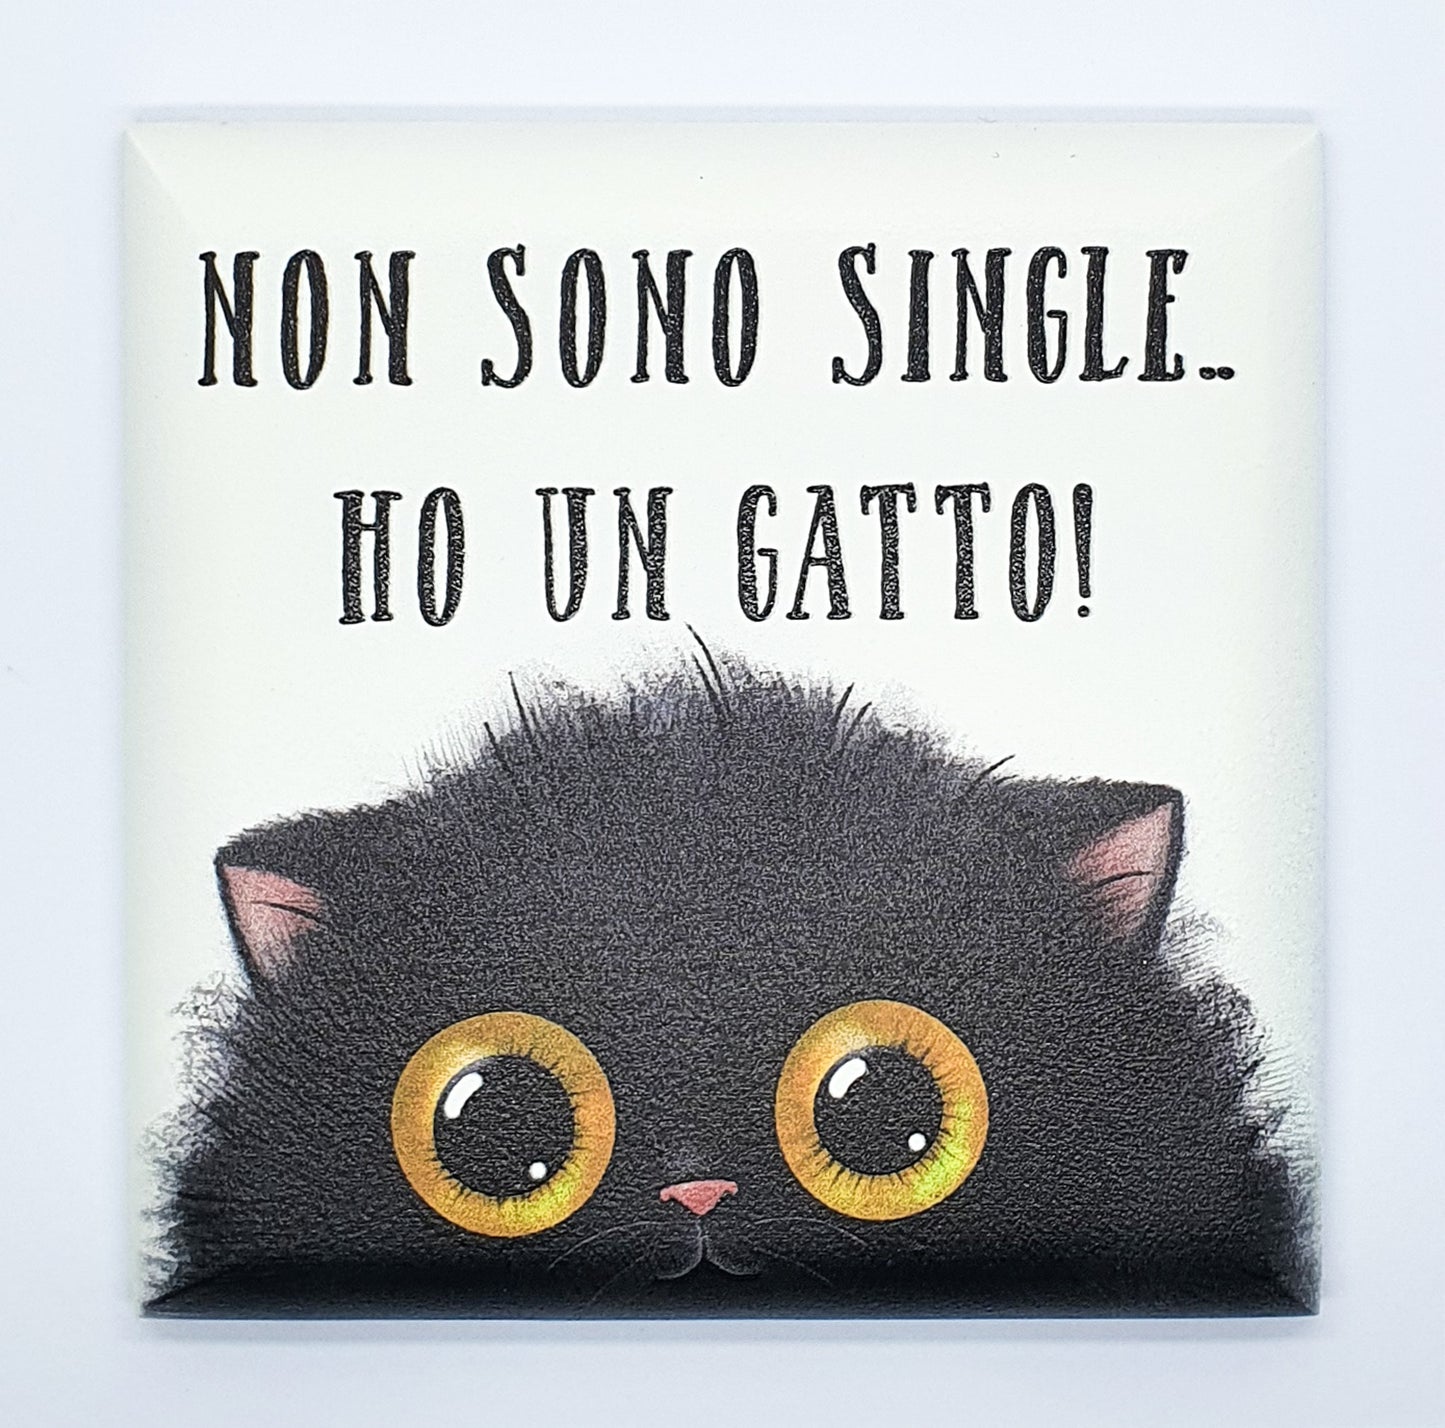 Quadretto Black Cat Sweety "non sono single ho un gatto"